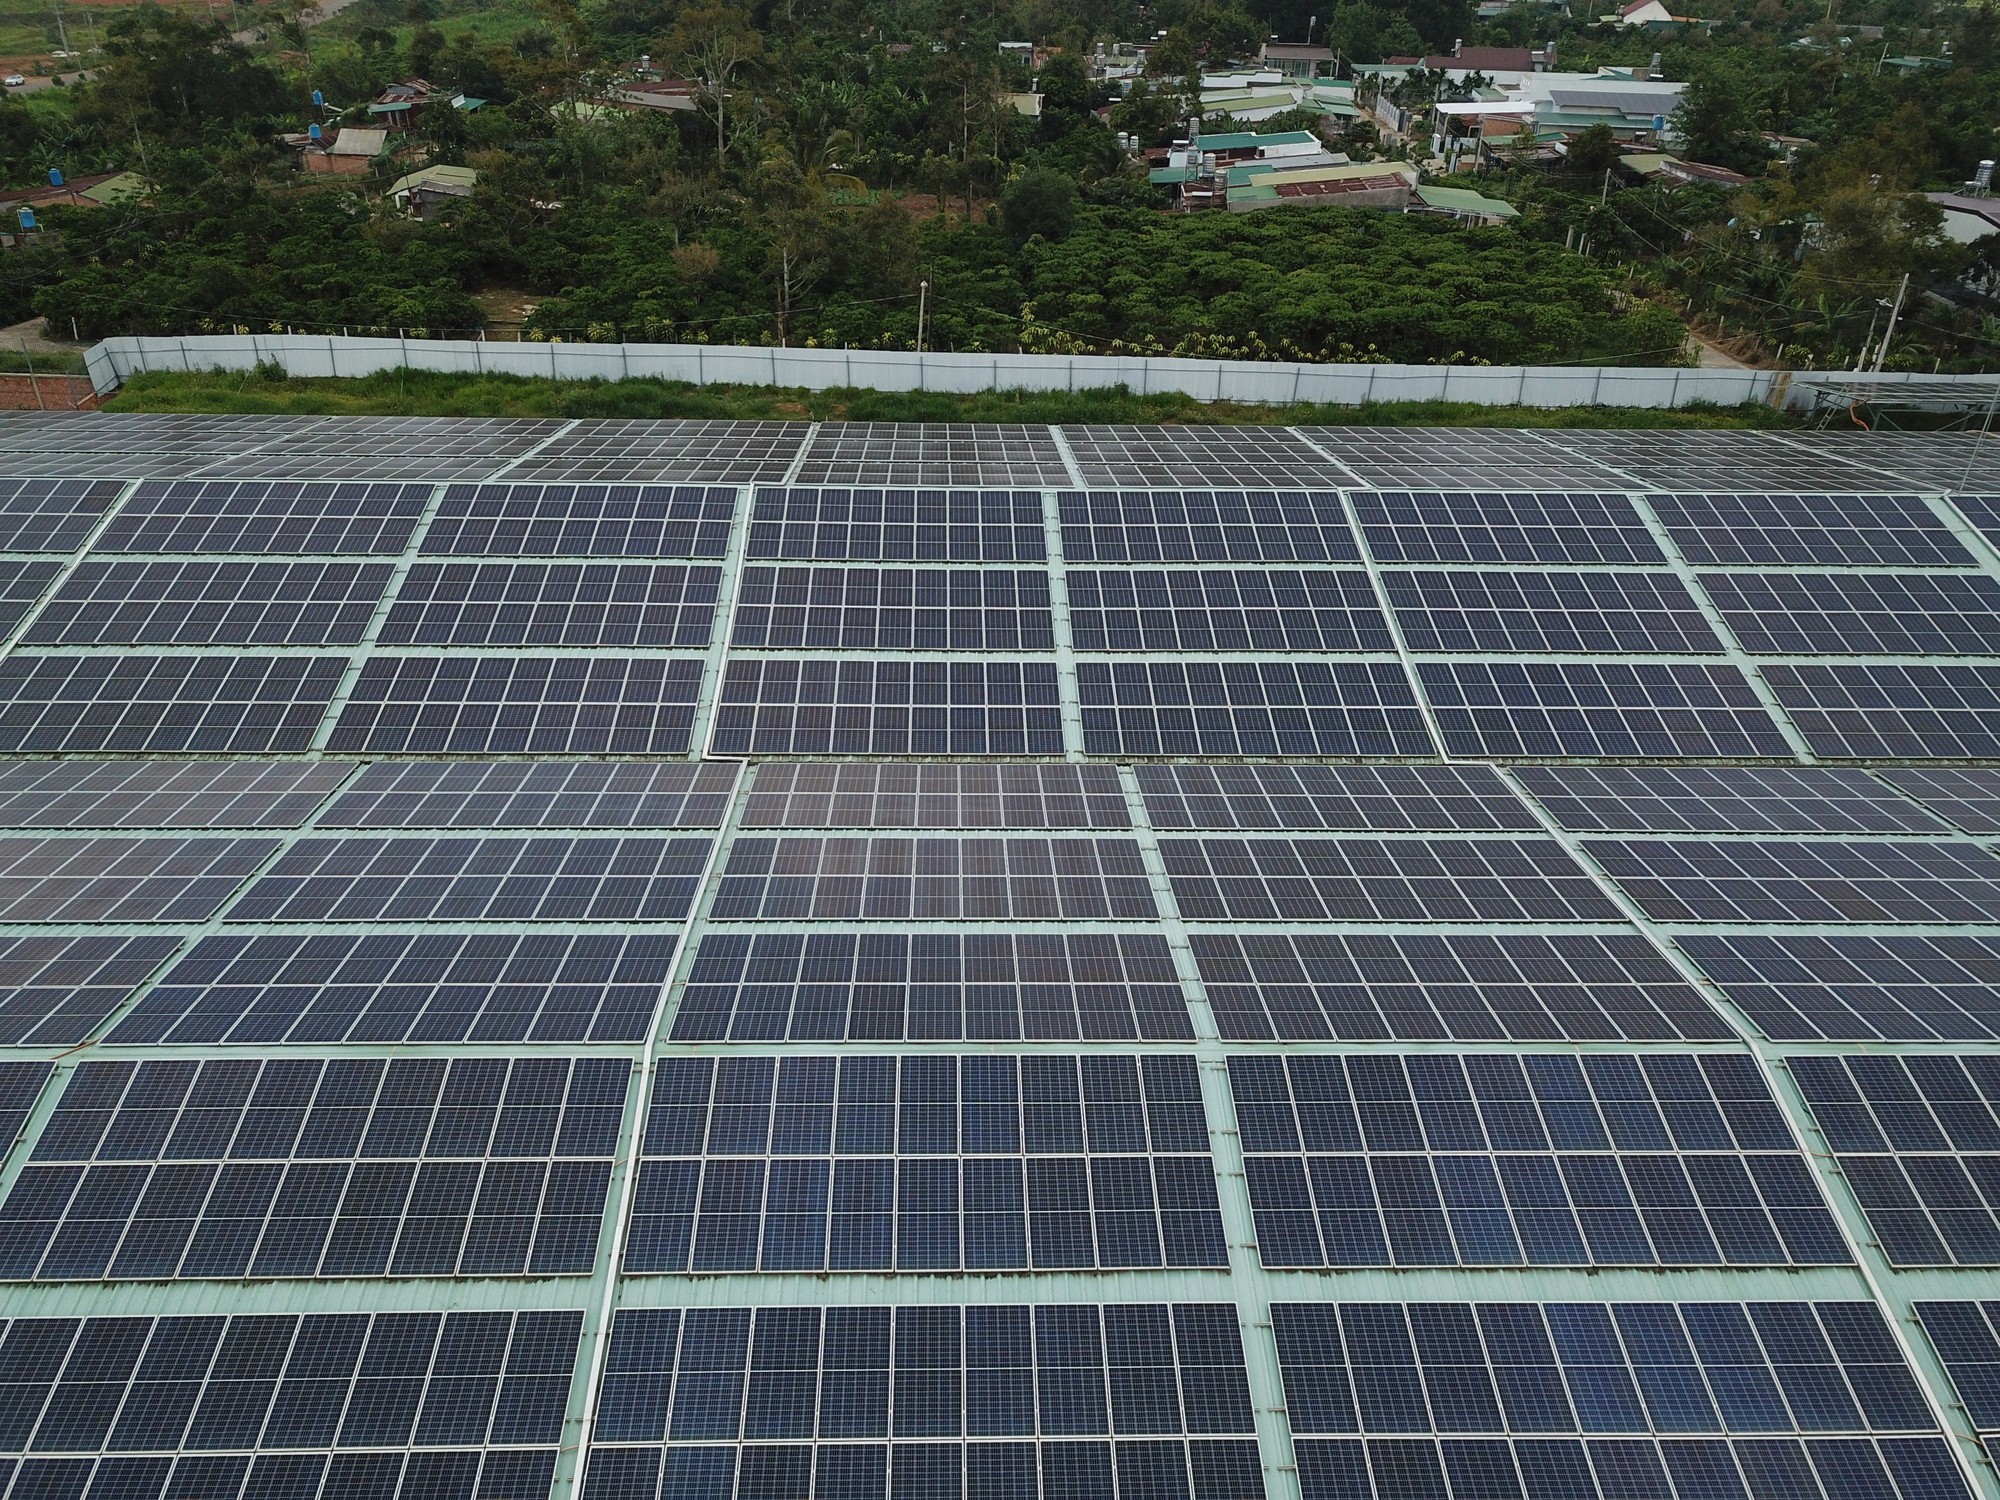 Điện lực Lâm Đồng nói gì về vụ Núp bóng dự án trong KCN để sản xuất điện mặt trời không phép?? - Ảnh 2.